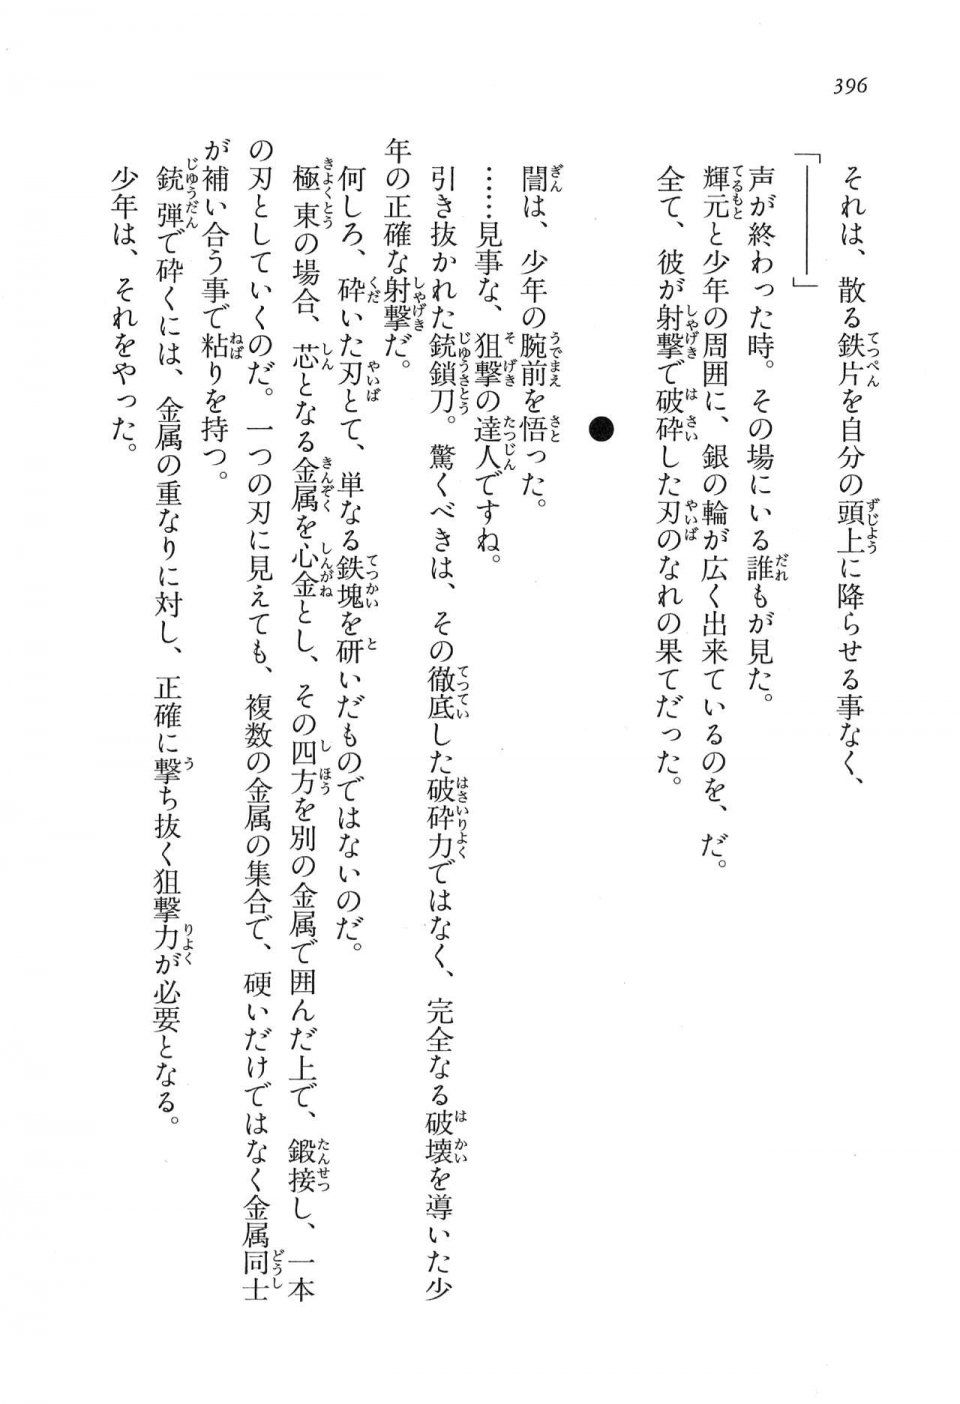 Kyoukai Senjou no Horizon LN Vol 16(7A) - Photo #396